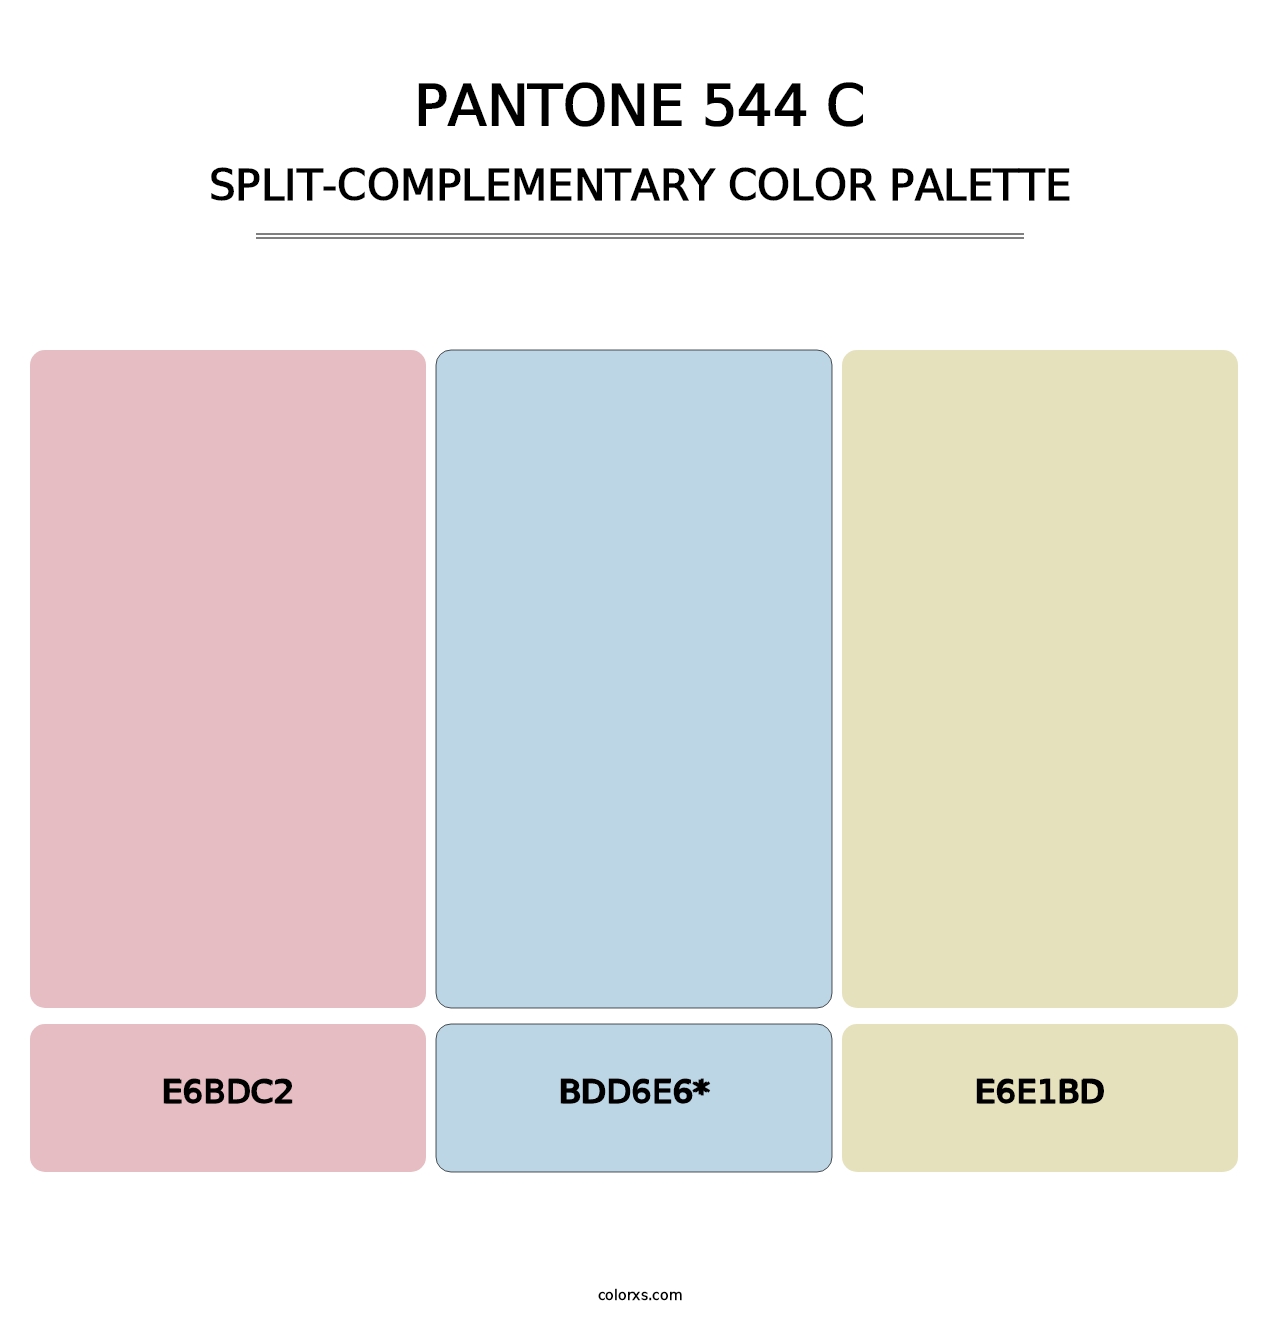 PANTONE 544 C - Split-Complementary Color Palette